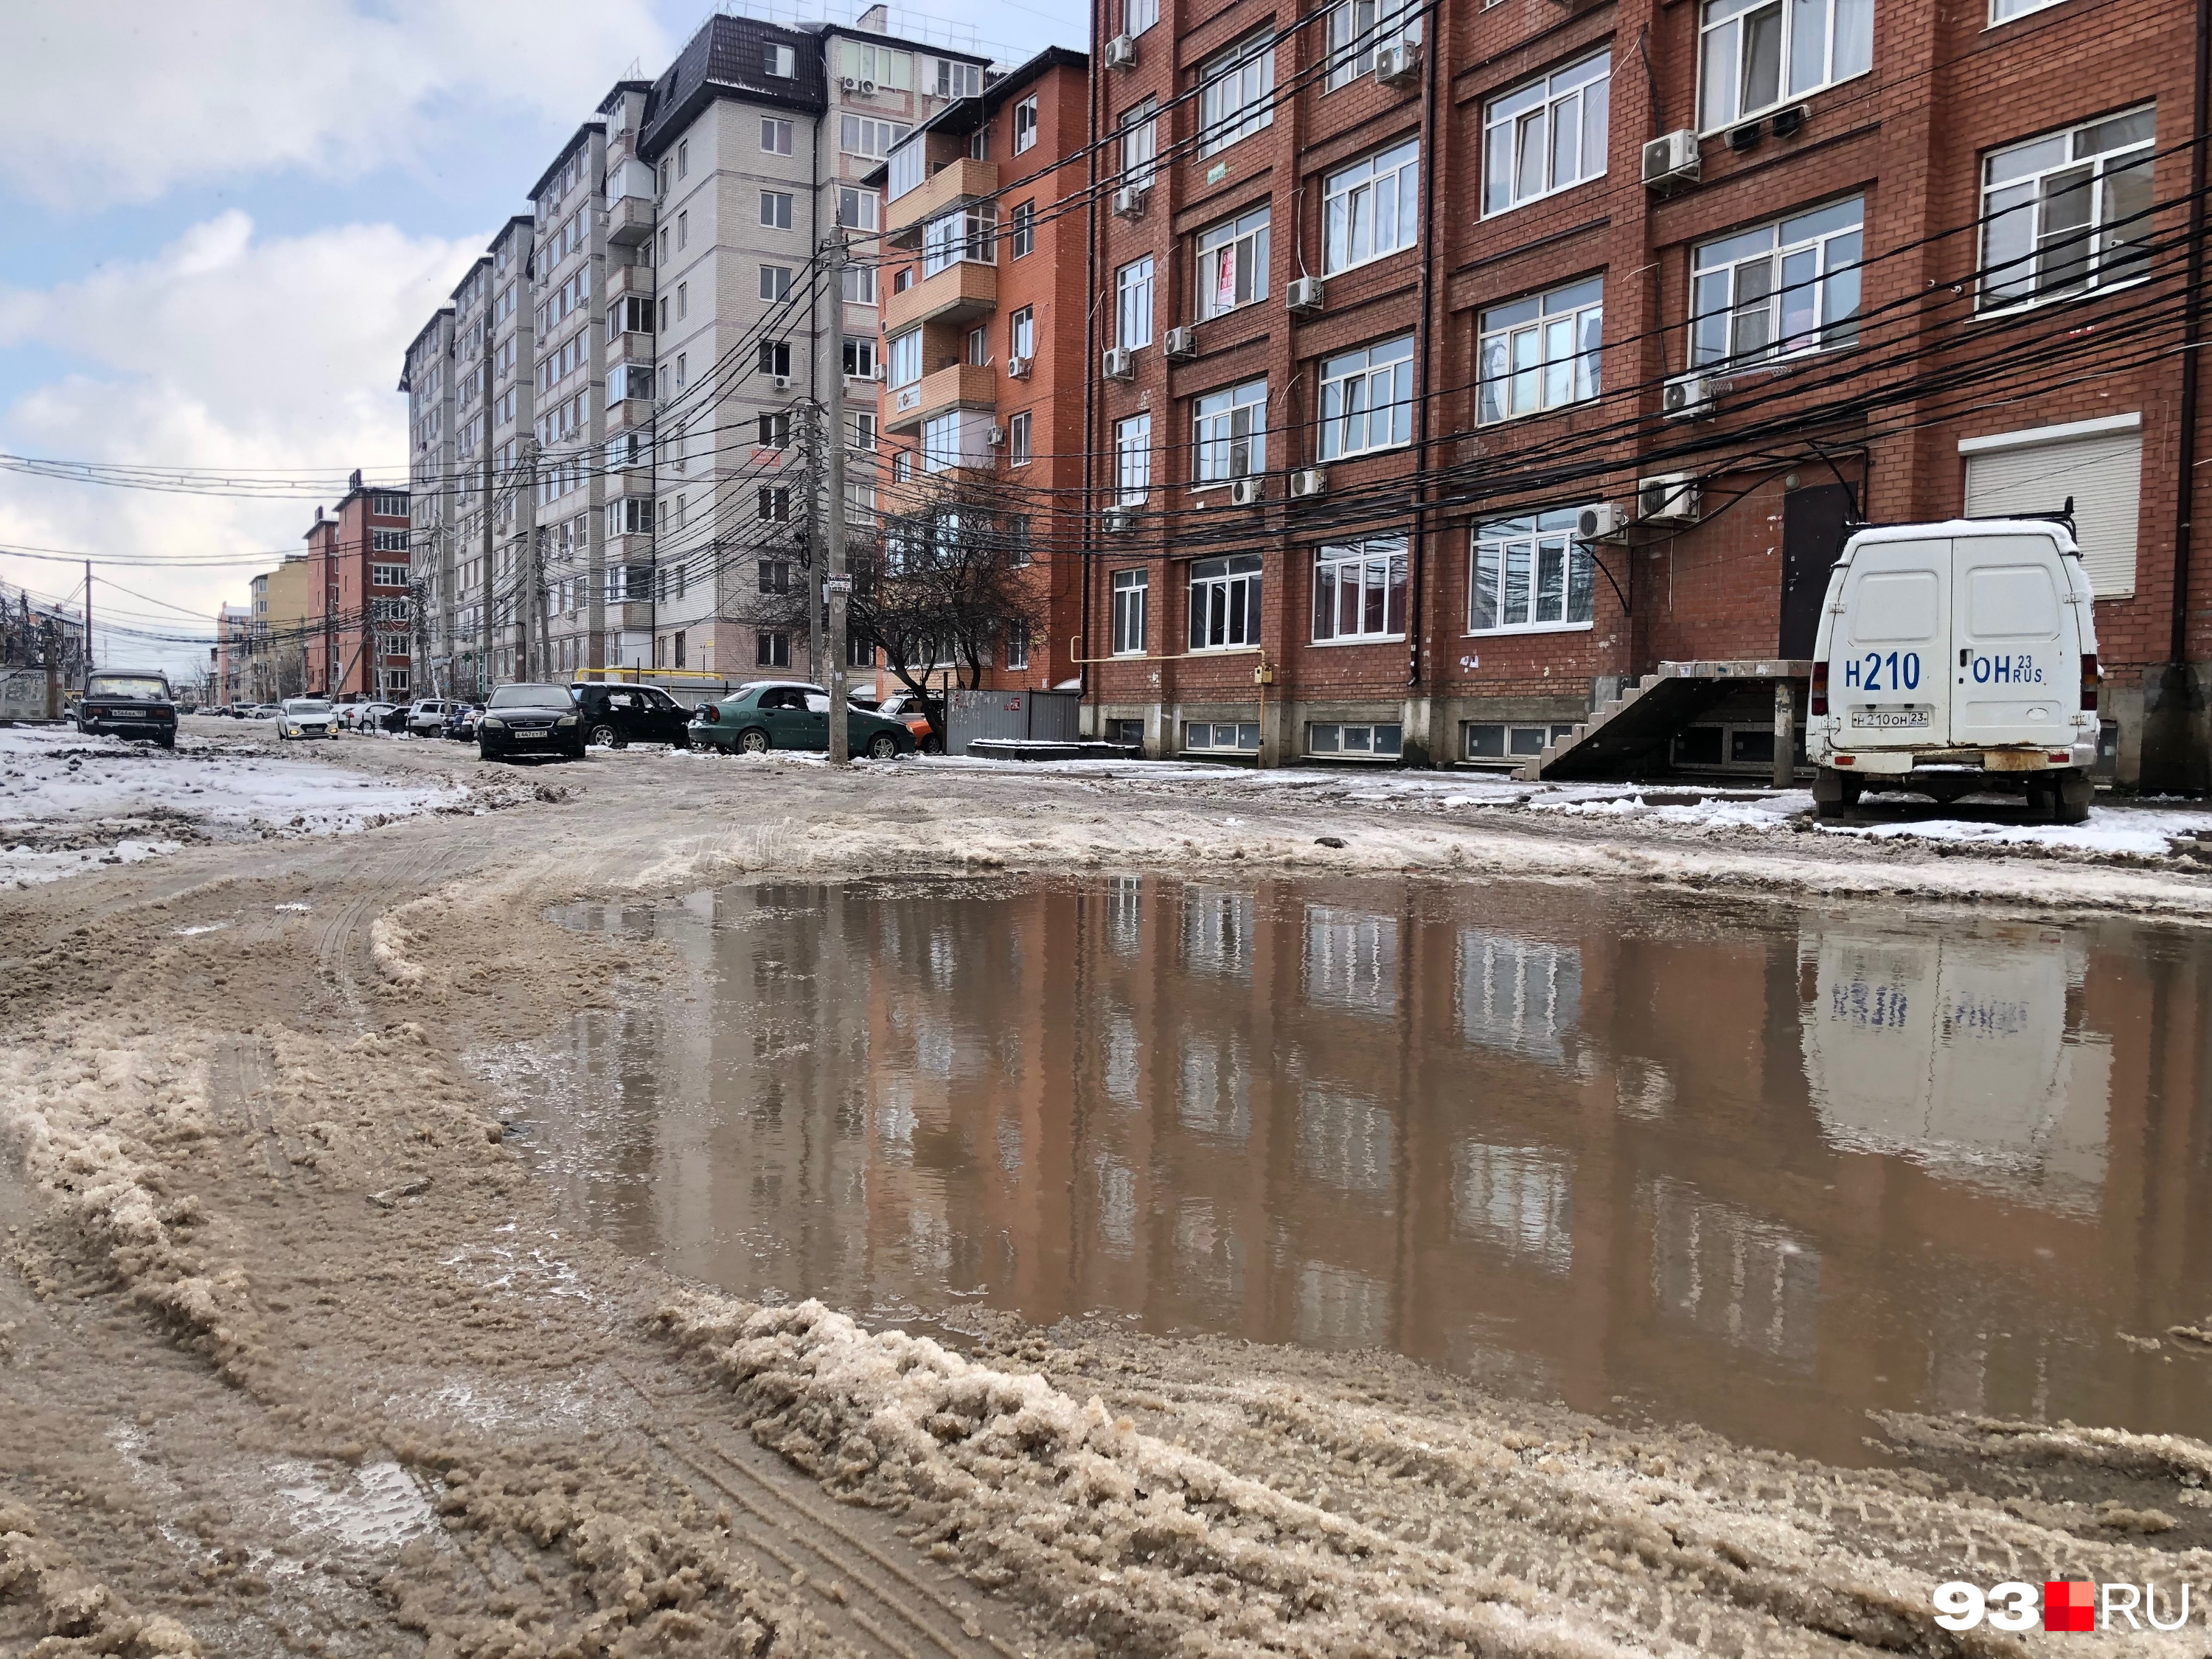 Состояние улицы Ратной Славы, за ремонт которой люди боролись годами и дошли до Путина